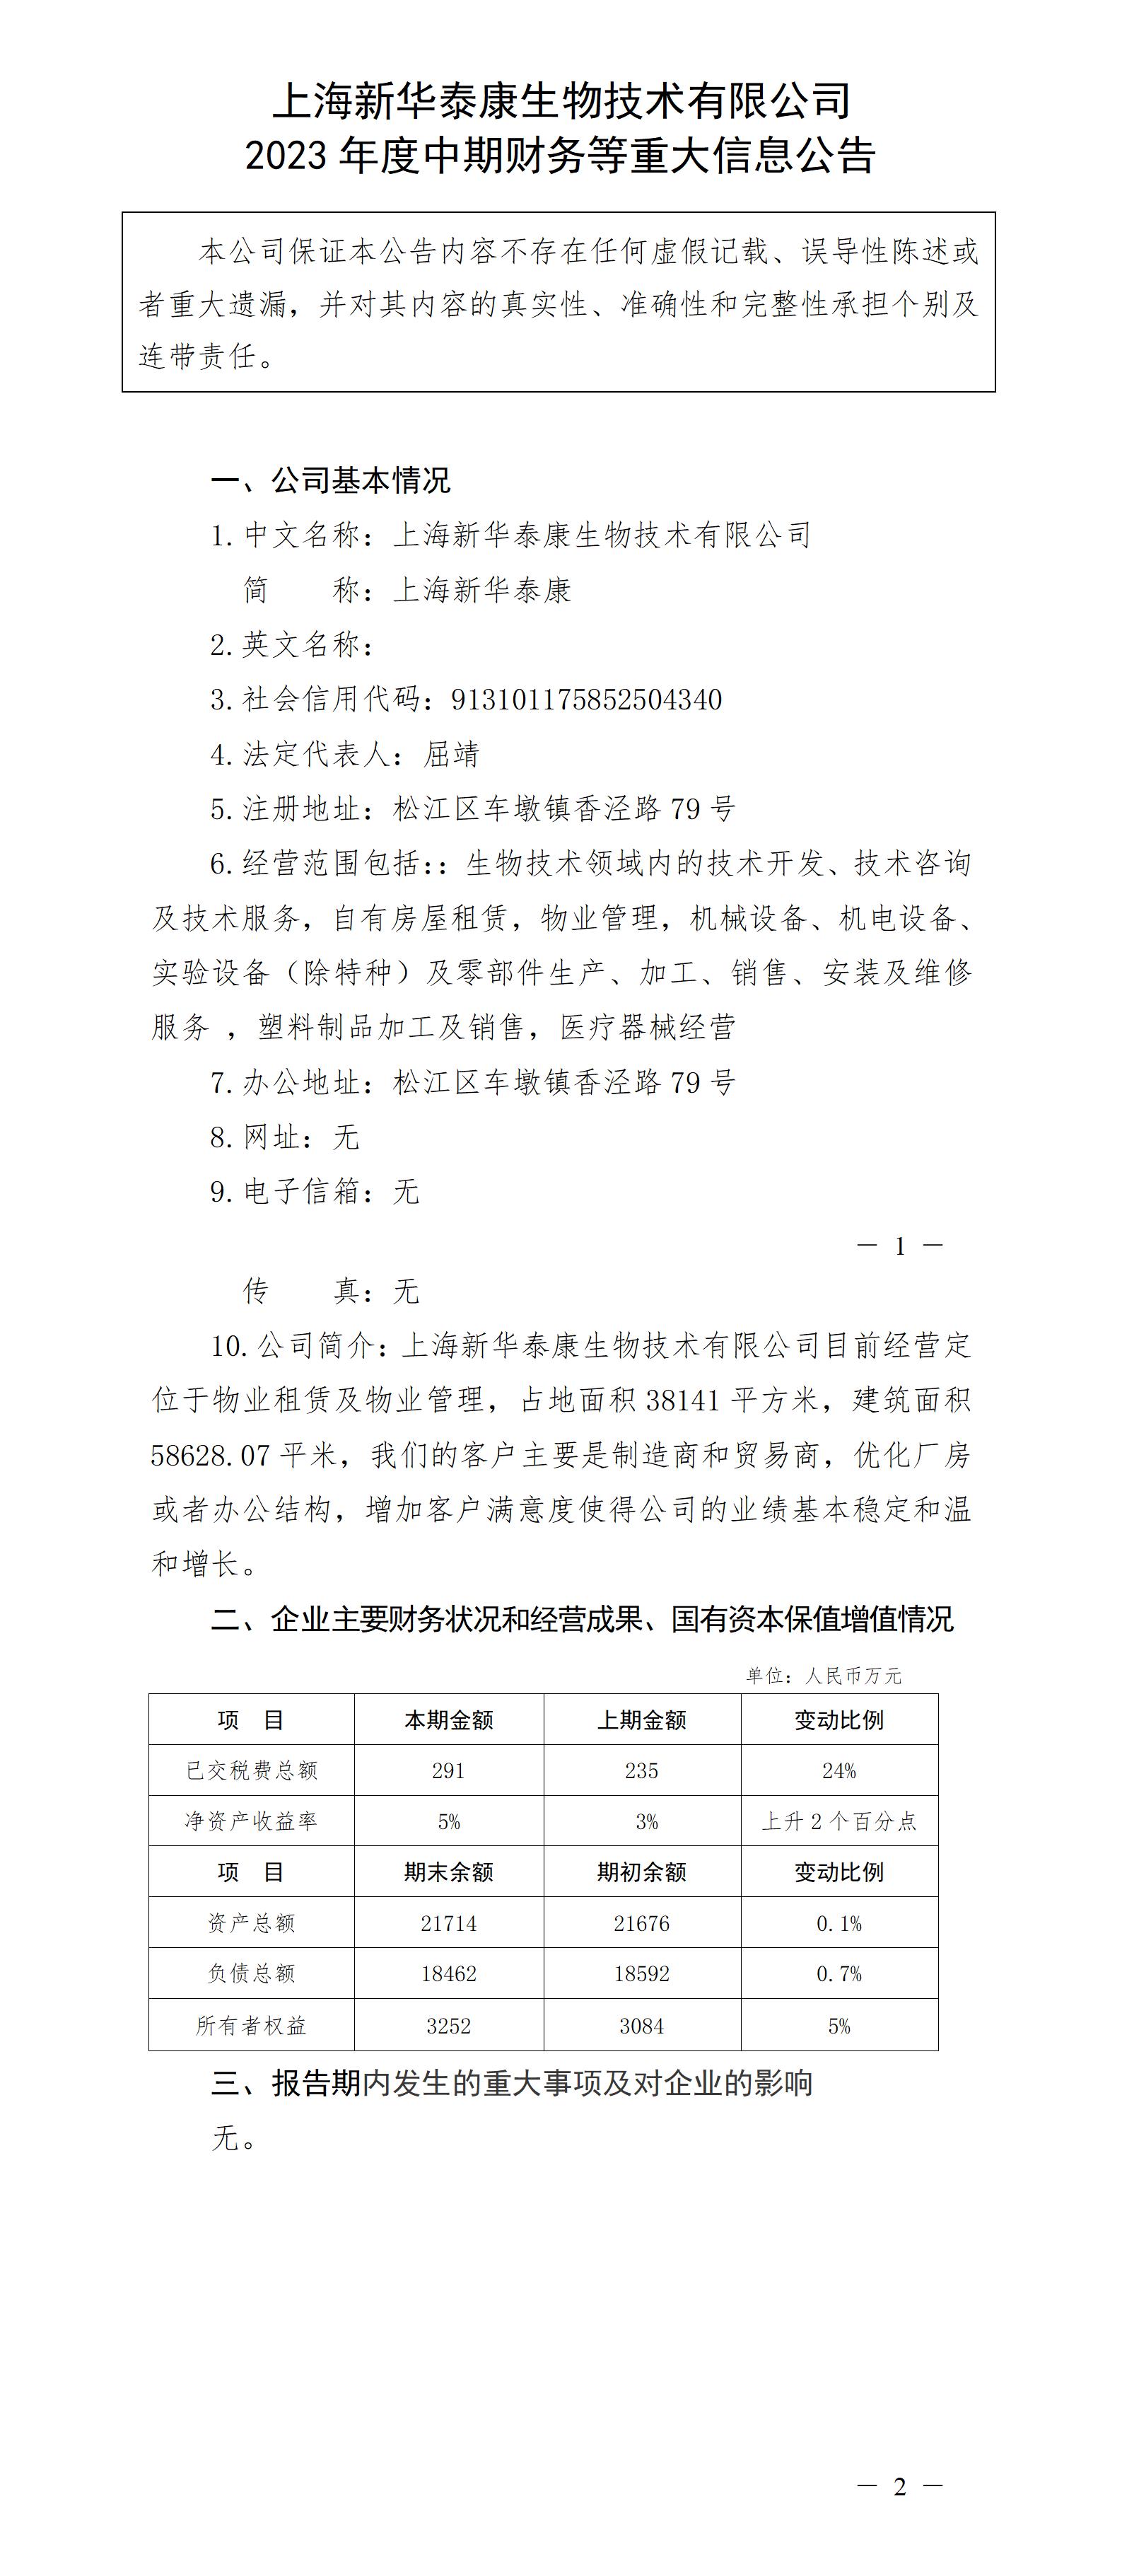 上海新華泰康生物技術有限公司2023年度中期財務等重大信息公告_01.jpg